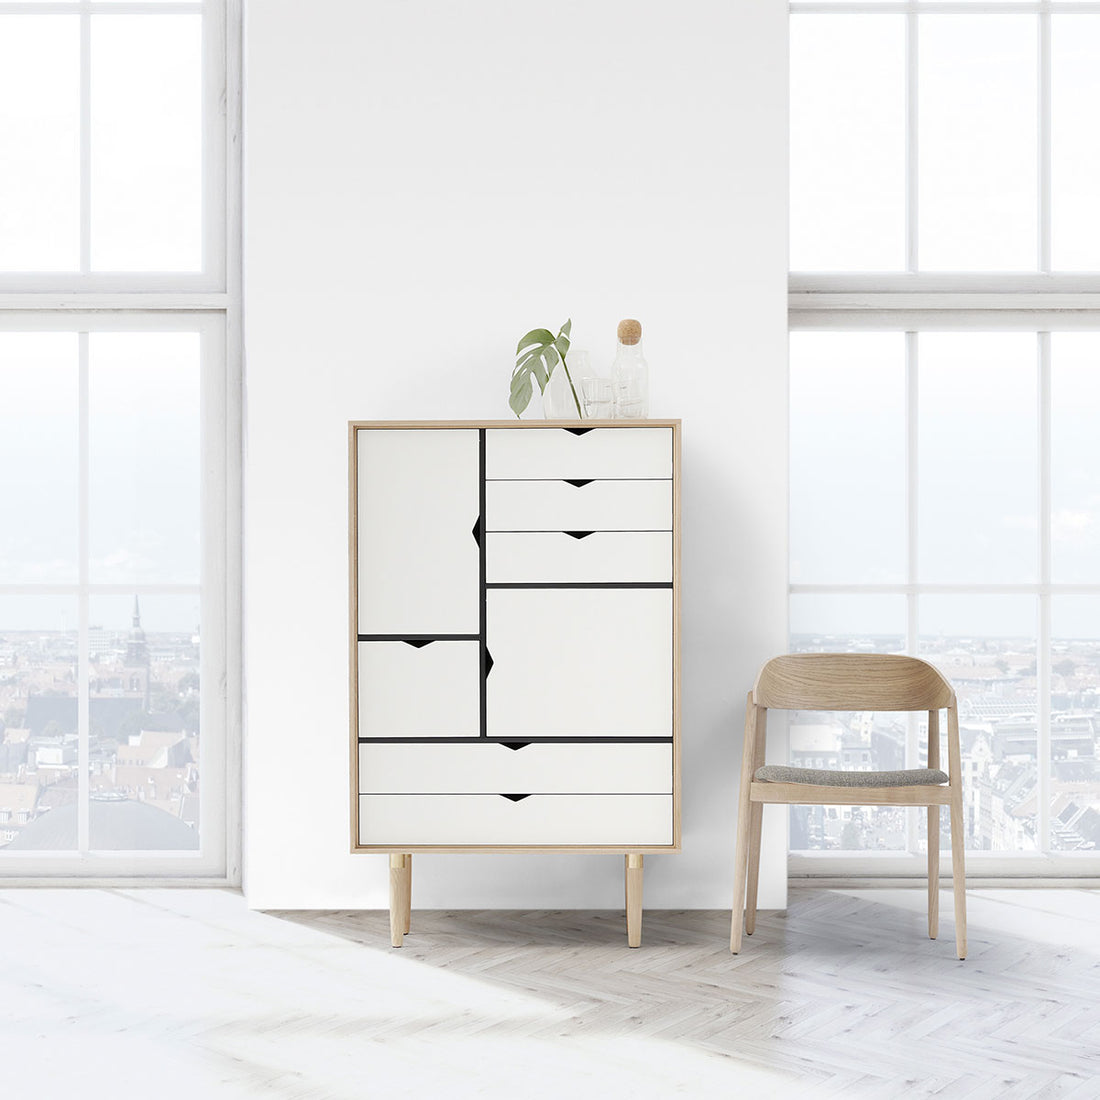 Andersen Furniture S5 opbevaringsmøbel i eg/sæbe med hvid front - B83xD43xH132 cm - DesignGaragen.dk.